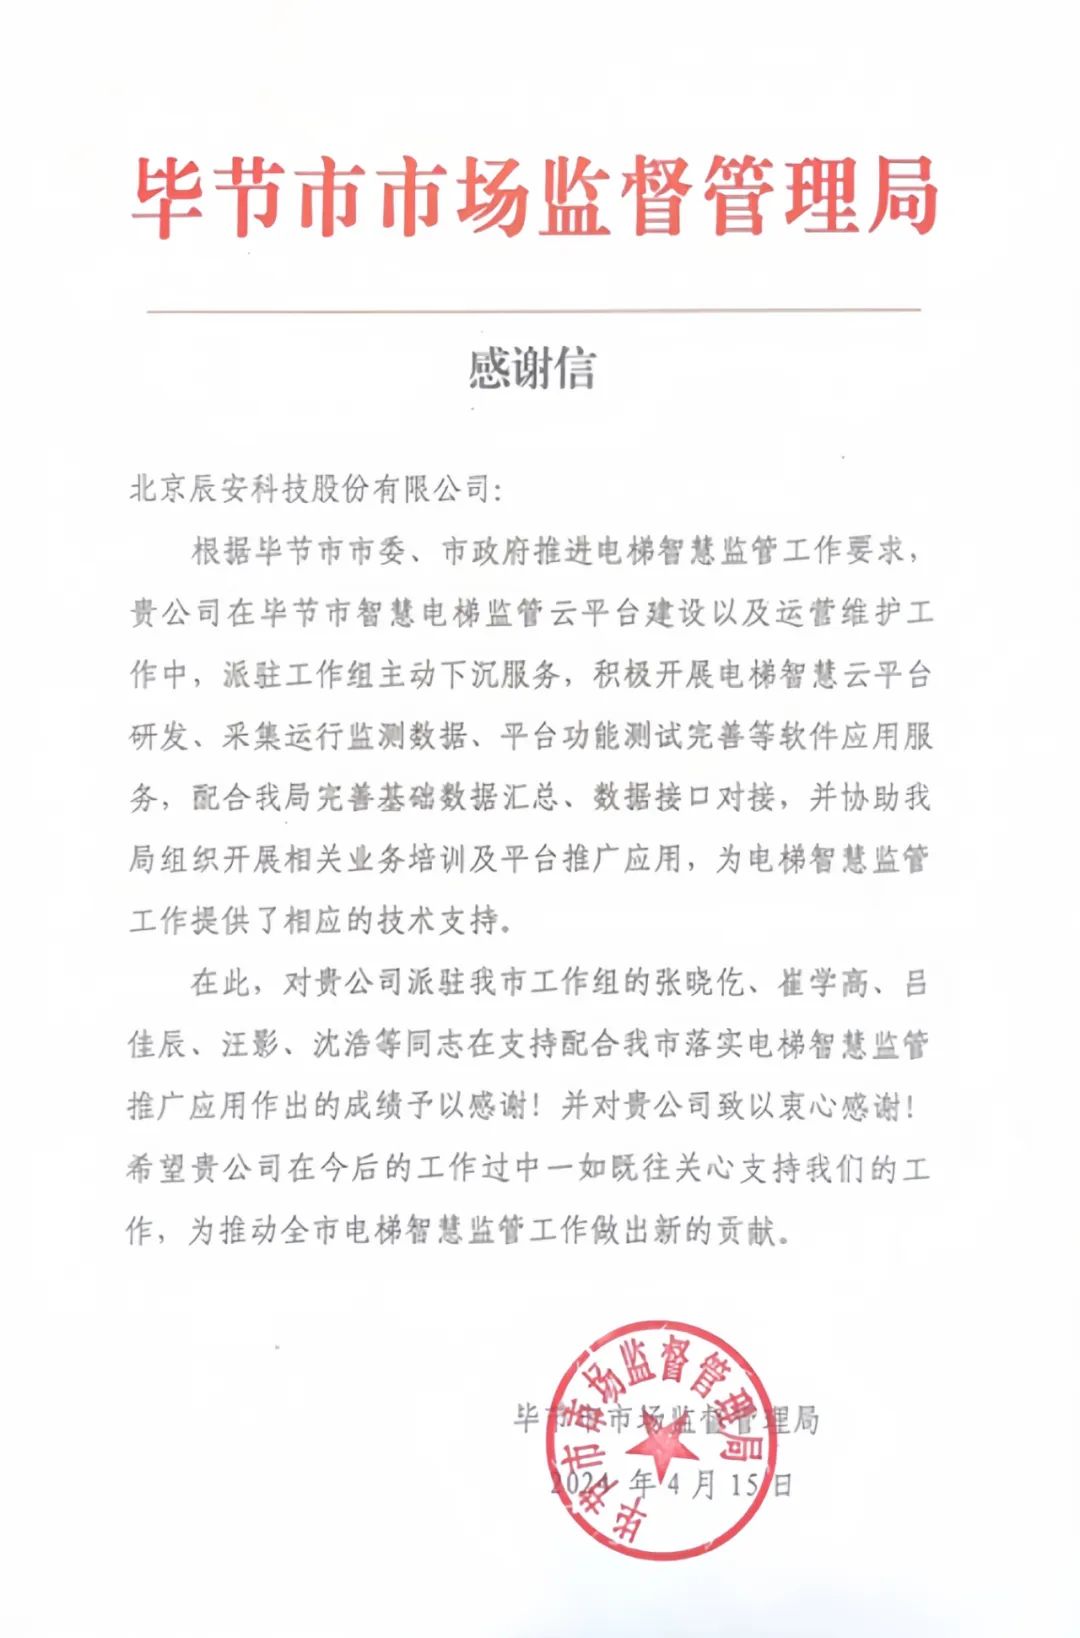 电梯卫士上岗！辰安科技收到来自毕节市市场监督管理局的感谢信！